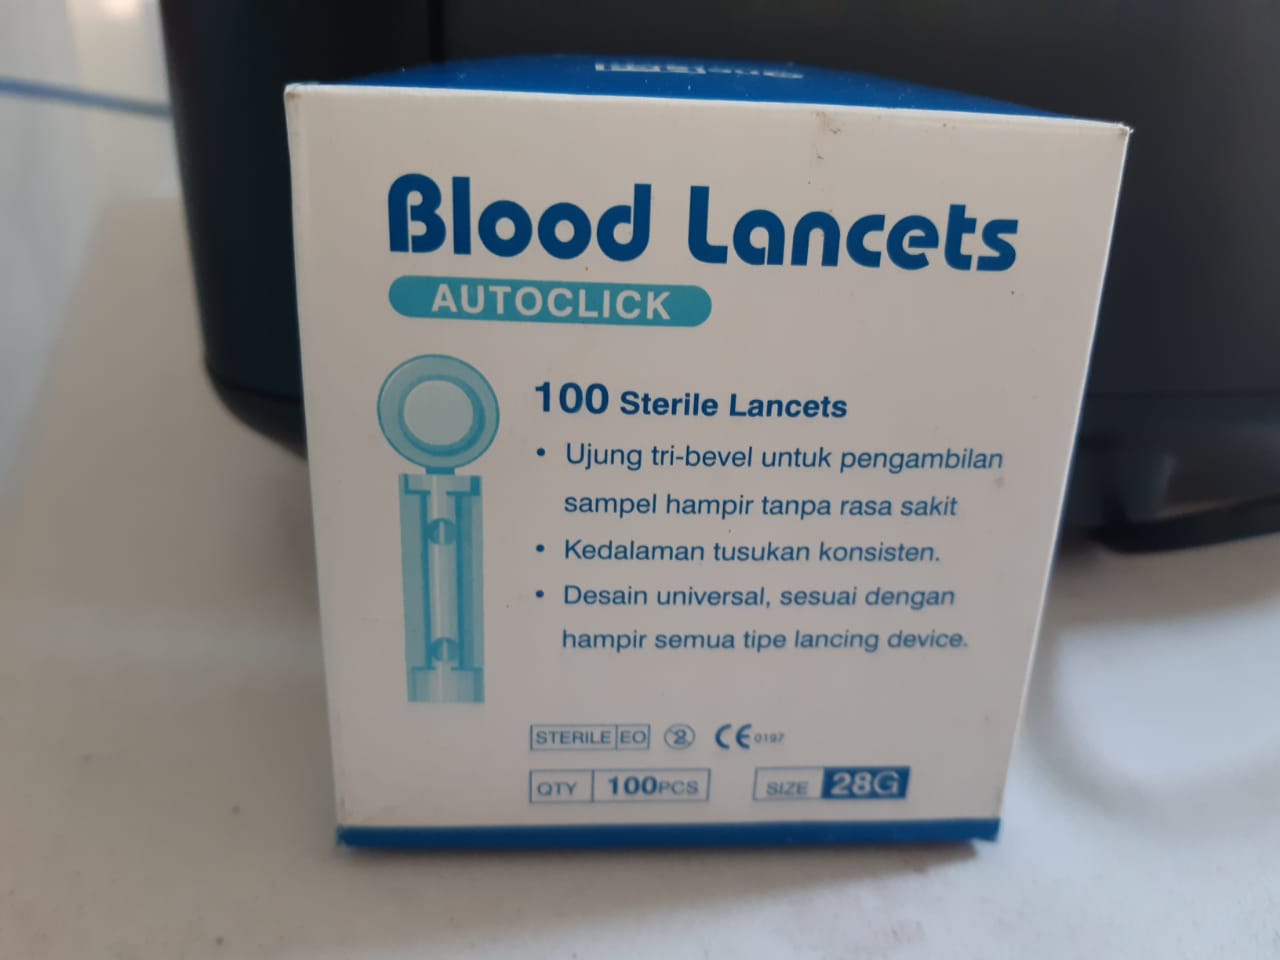 Blood lancet